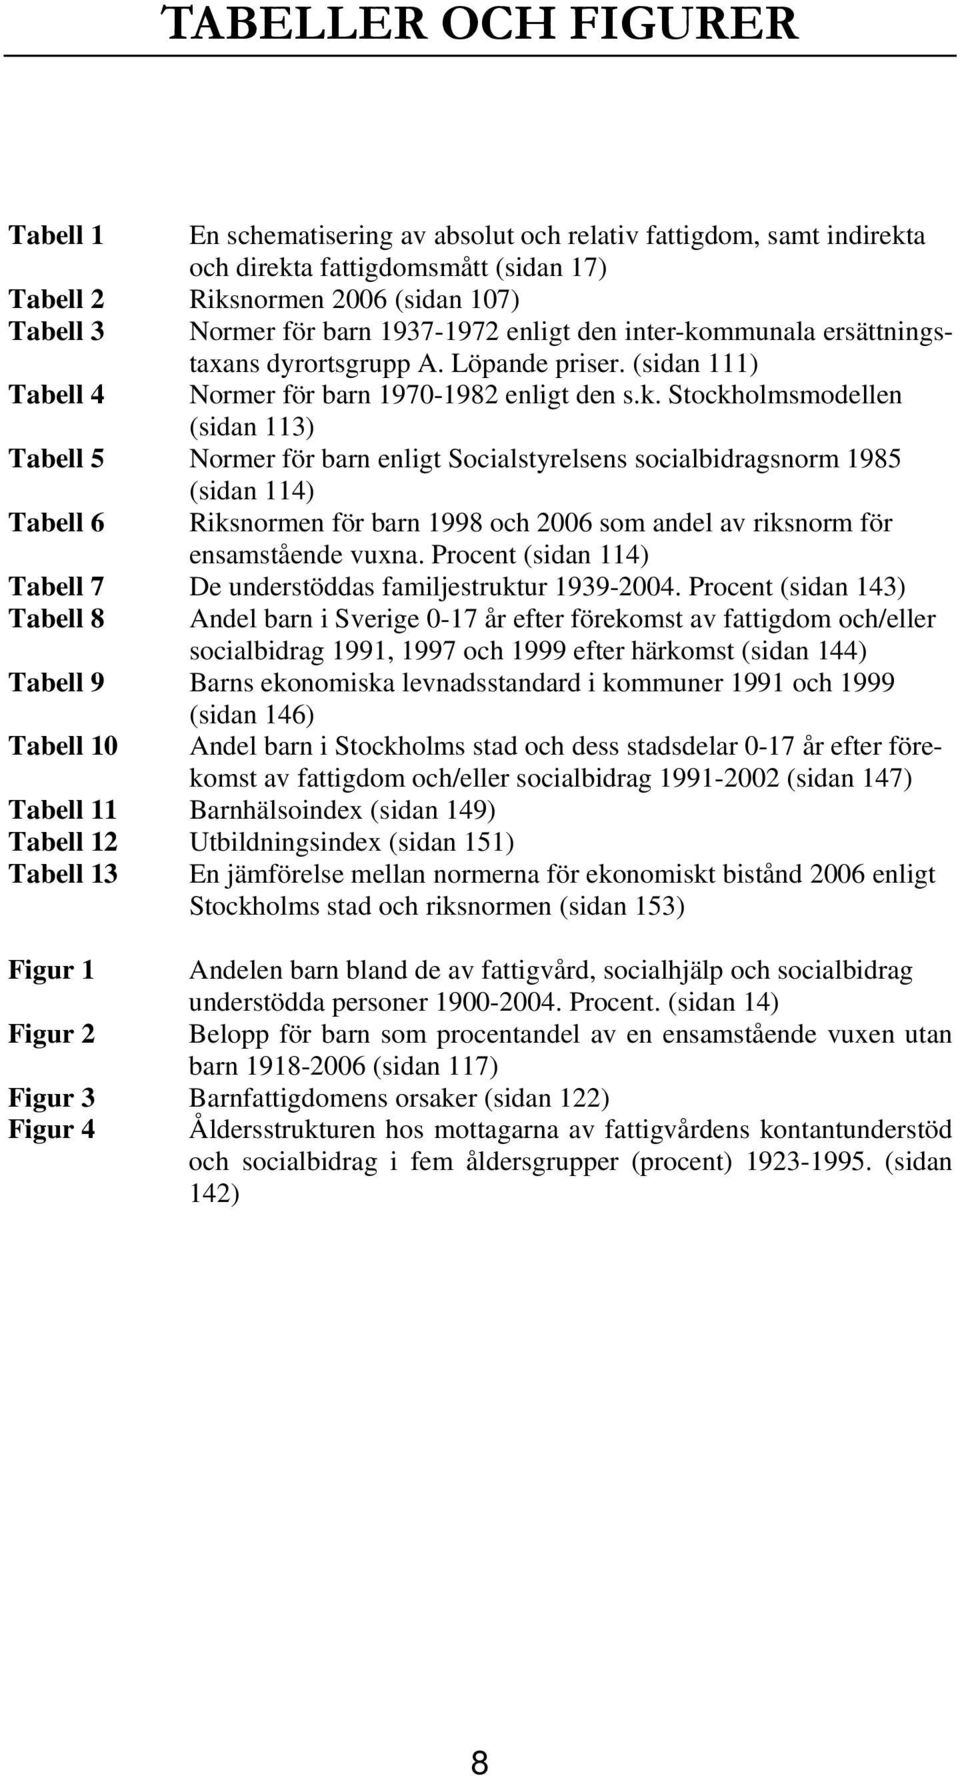 mmunala ersättningstaxans dyrortsgrupp A. Löpande priser. (sidan 111) Tabell 4 Normer för barn 1970-1982 enligt den s.k.